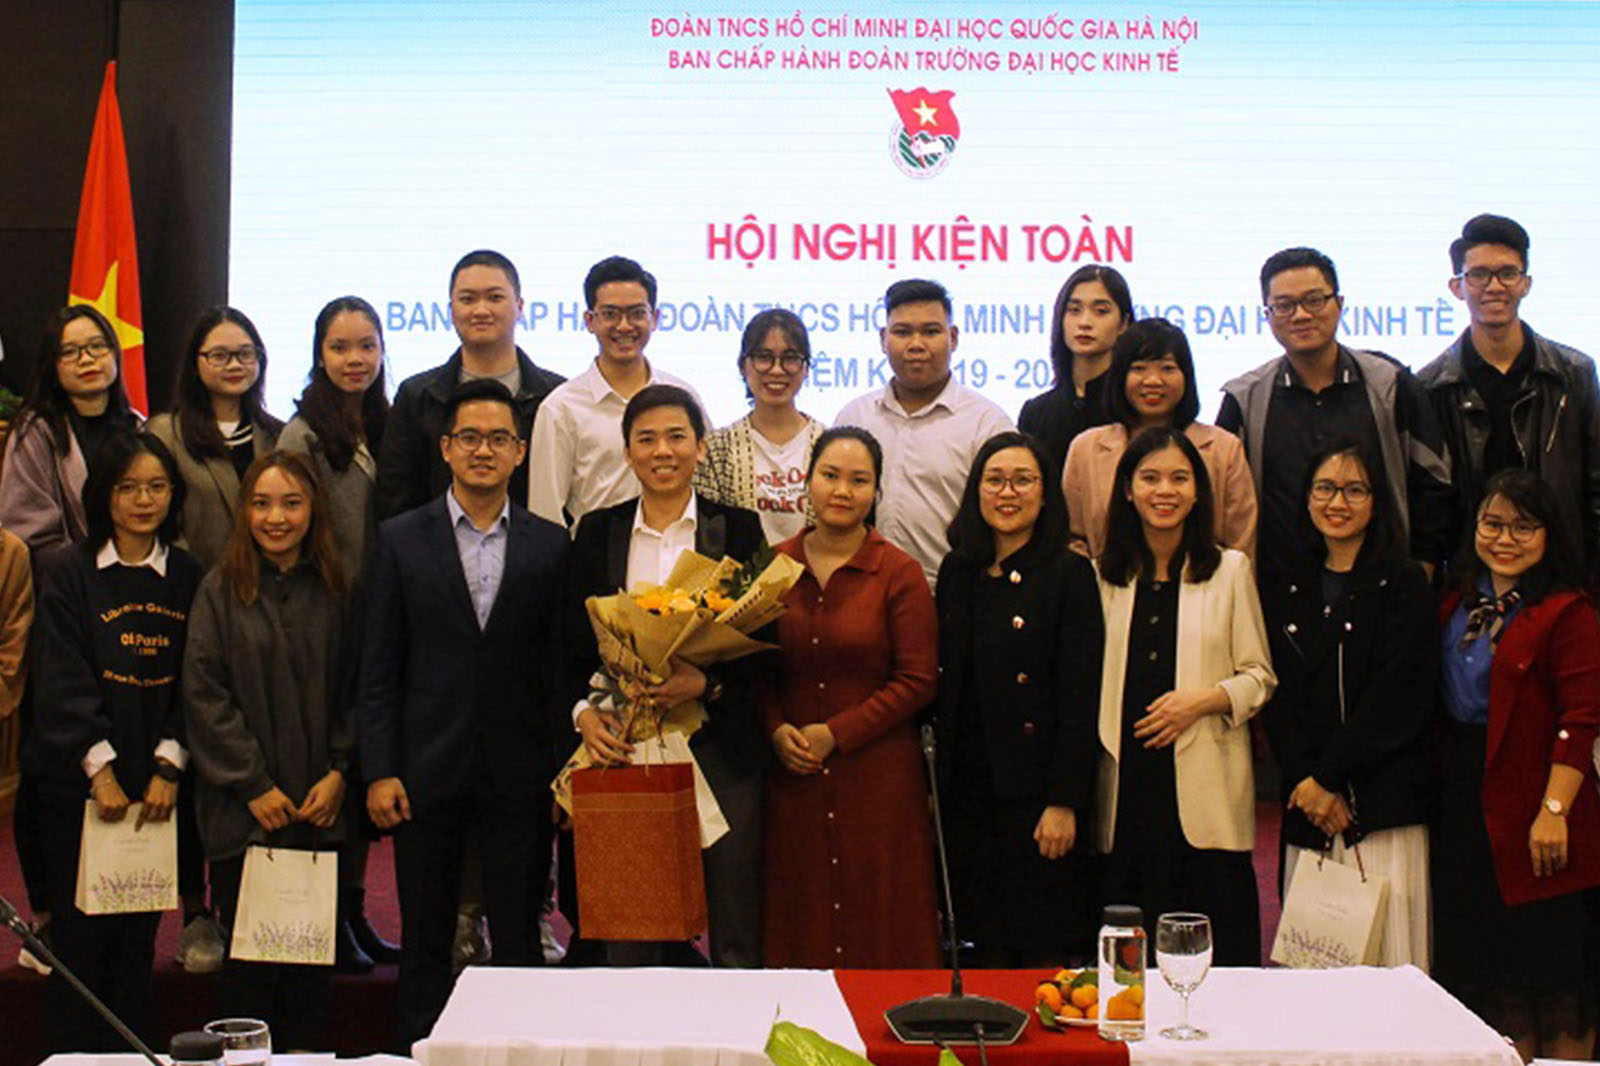 Anh Vũ Duy trở thành tân Bí thư Đoàn Trường khóa IX, nhiệm kỳ 2019 - 2022